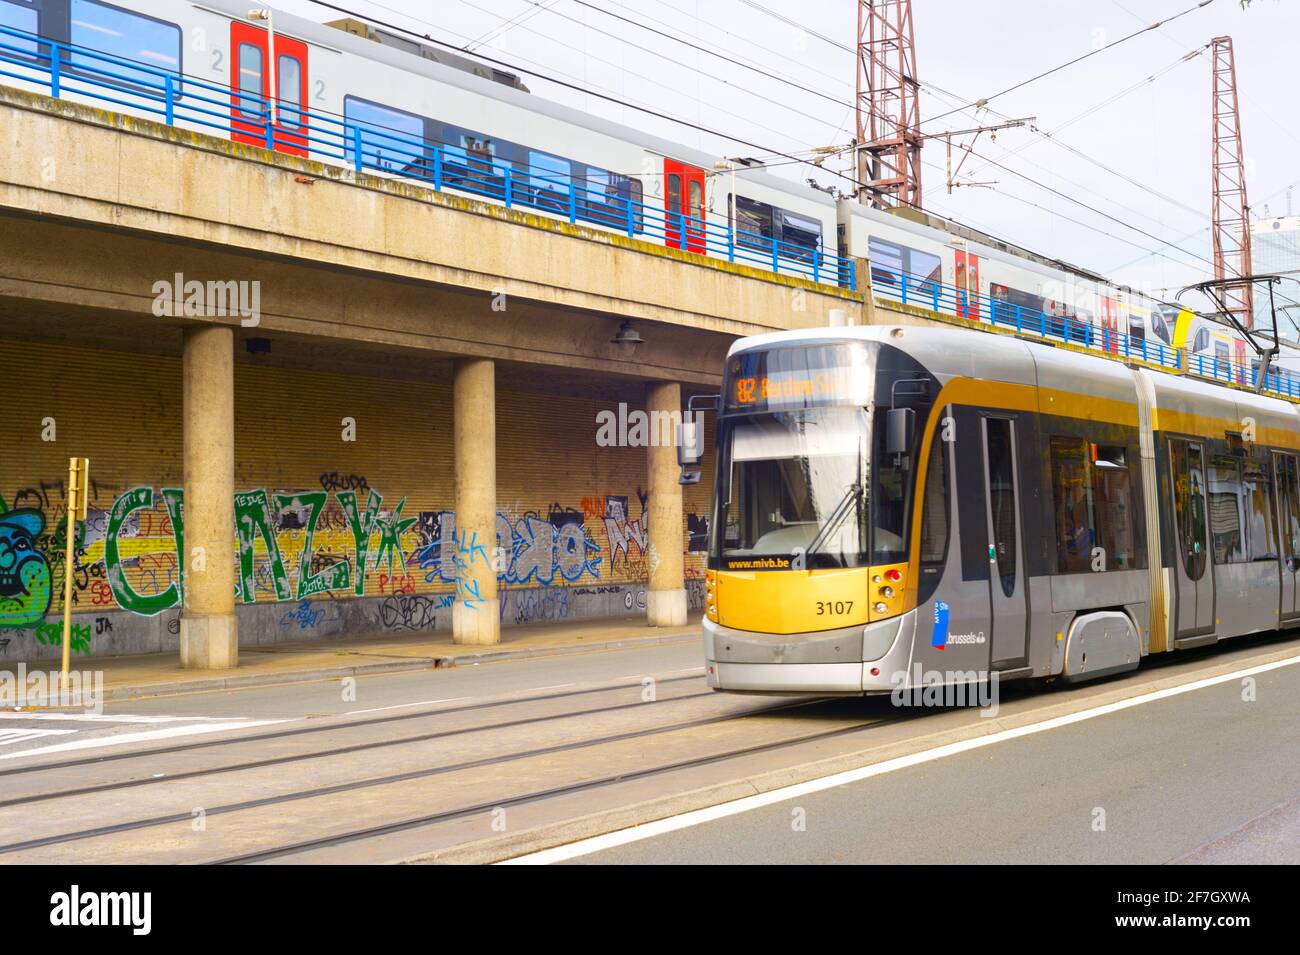 BRUSELAS, BÉLGICA - 05 DE OCTUBRE de 2019: Personas en un tranvía, tren  público arriba. Transporte público moderno de Bruselas Fotografía de stock  - Alamy